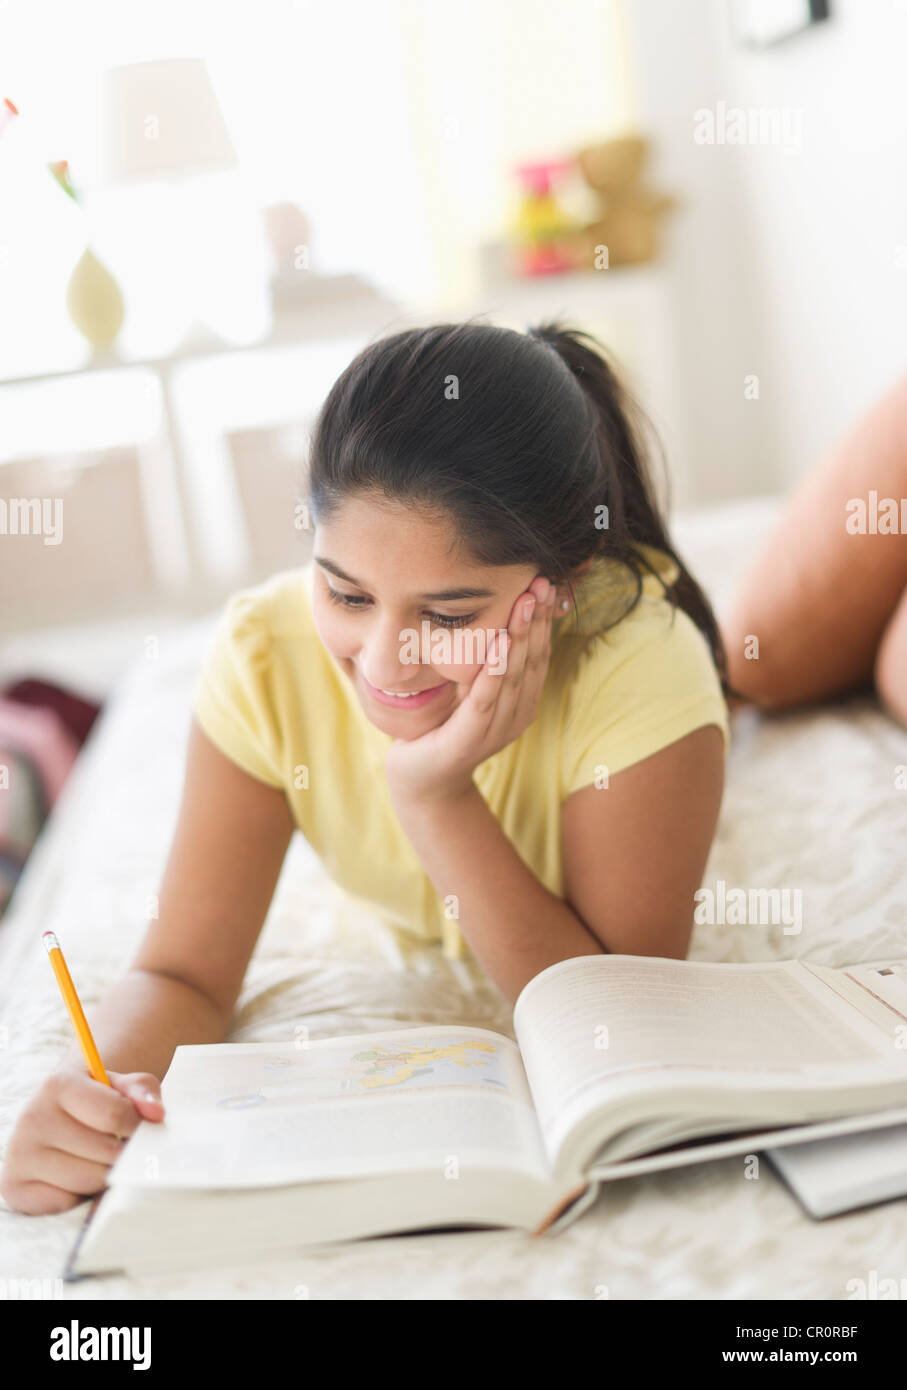 Stati Uniti d'America, New Jersey, Jersey City, ragazza (12-13) giacente sul letto e studiare Foto Stock